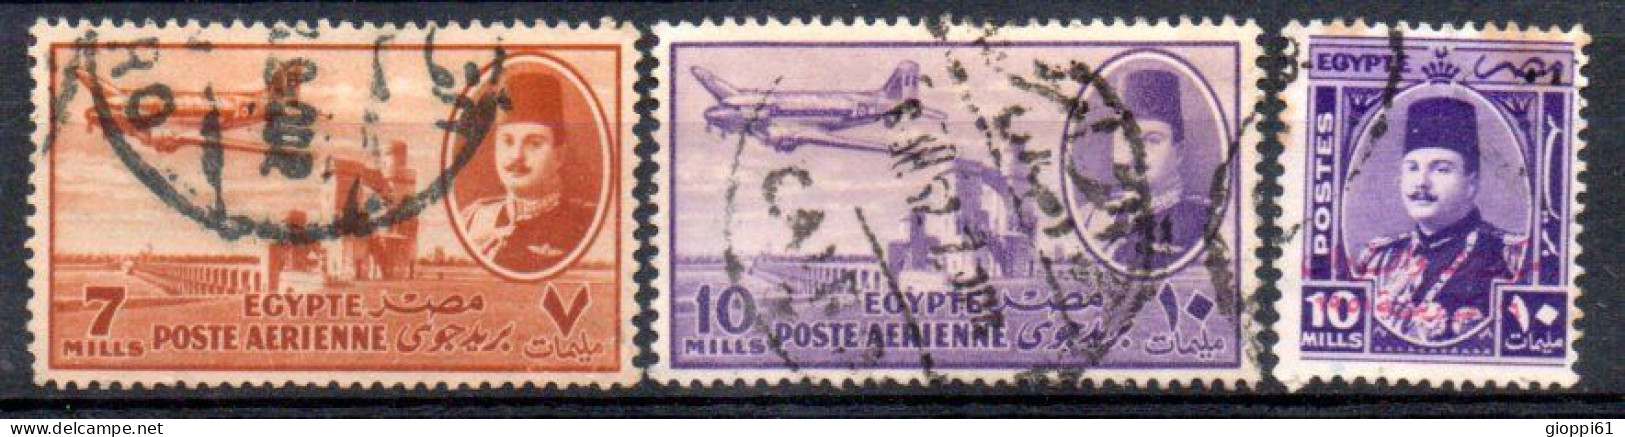 1952 Egitto - Posta Aerea + Commemorativo - Gebruikt